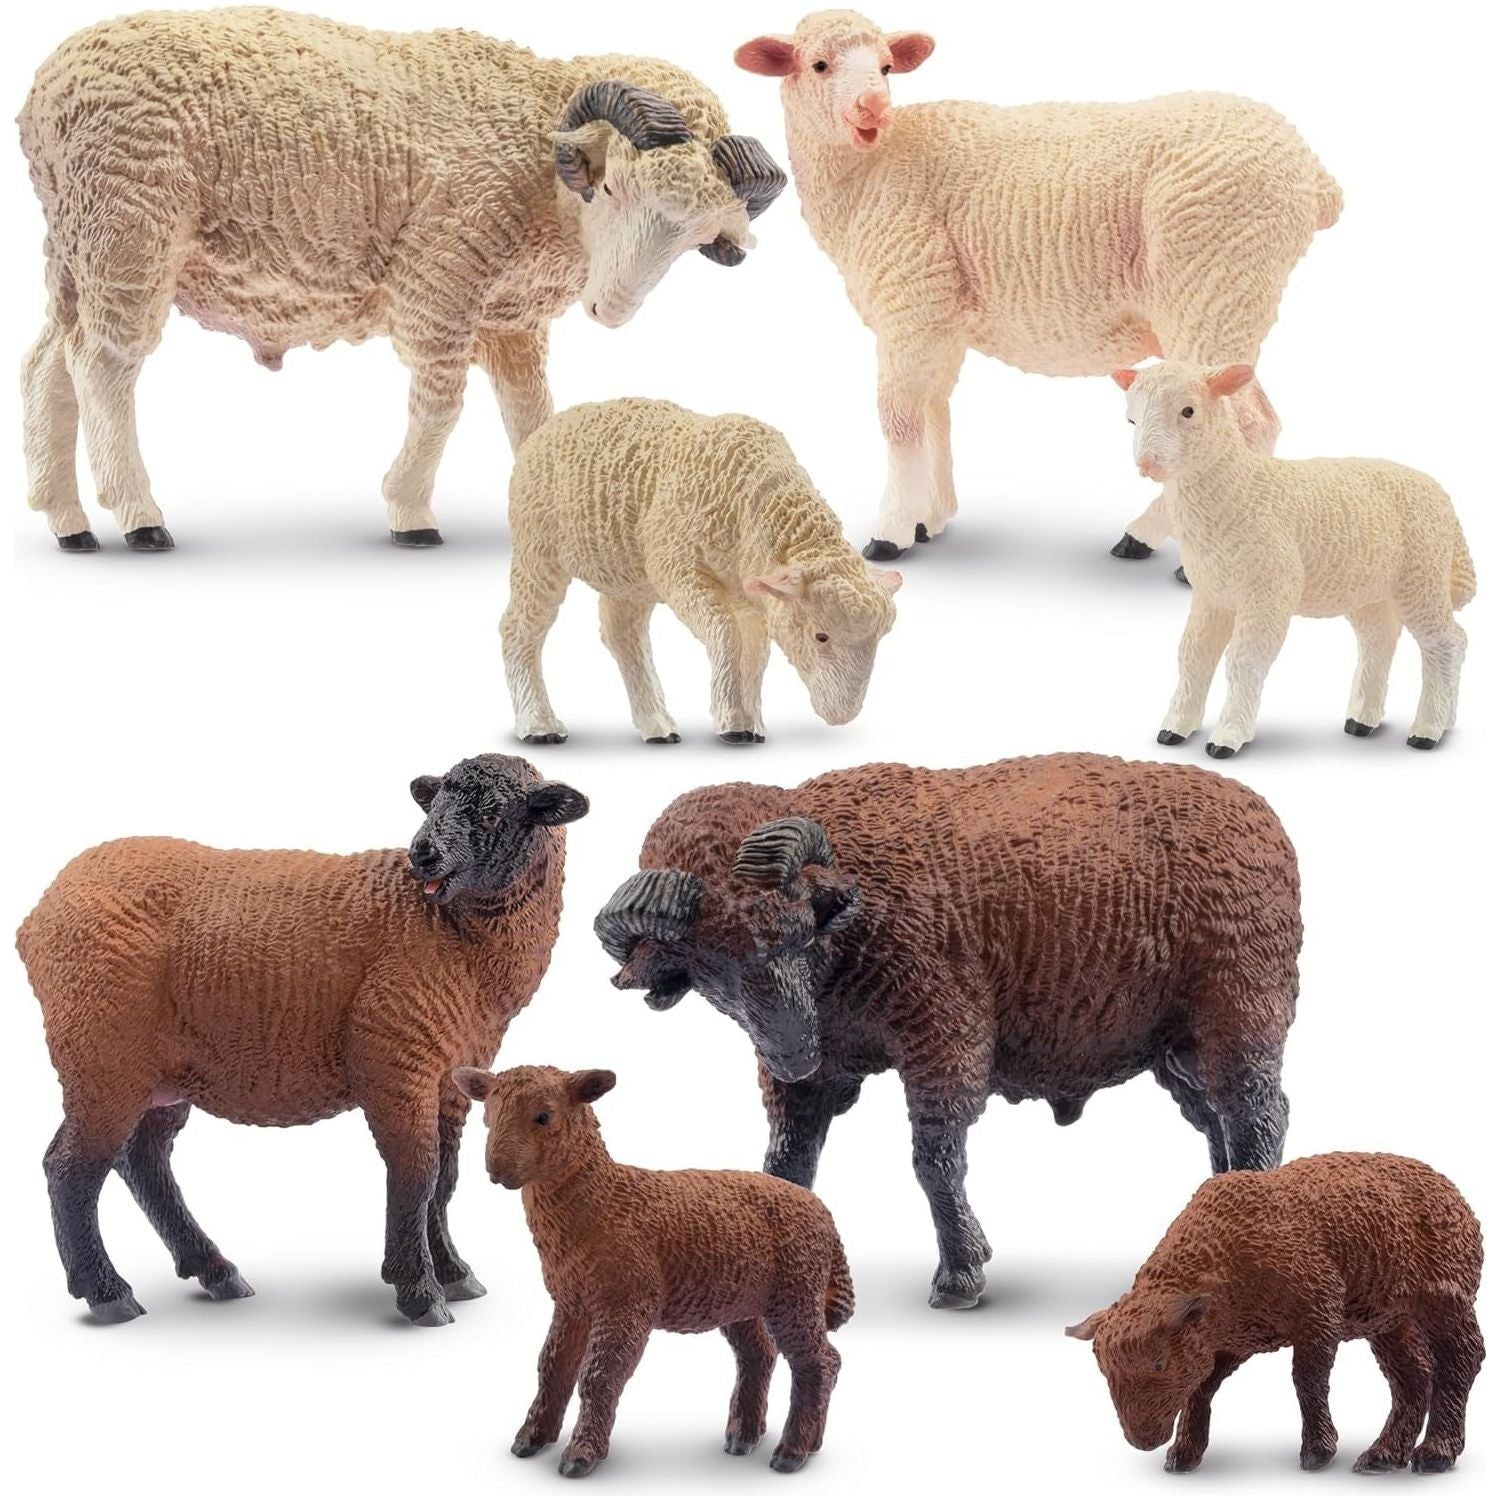 Sheep Family Animal Figures